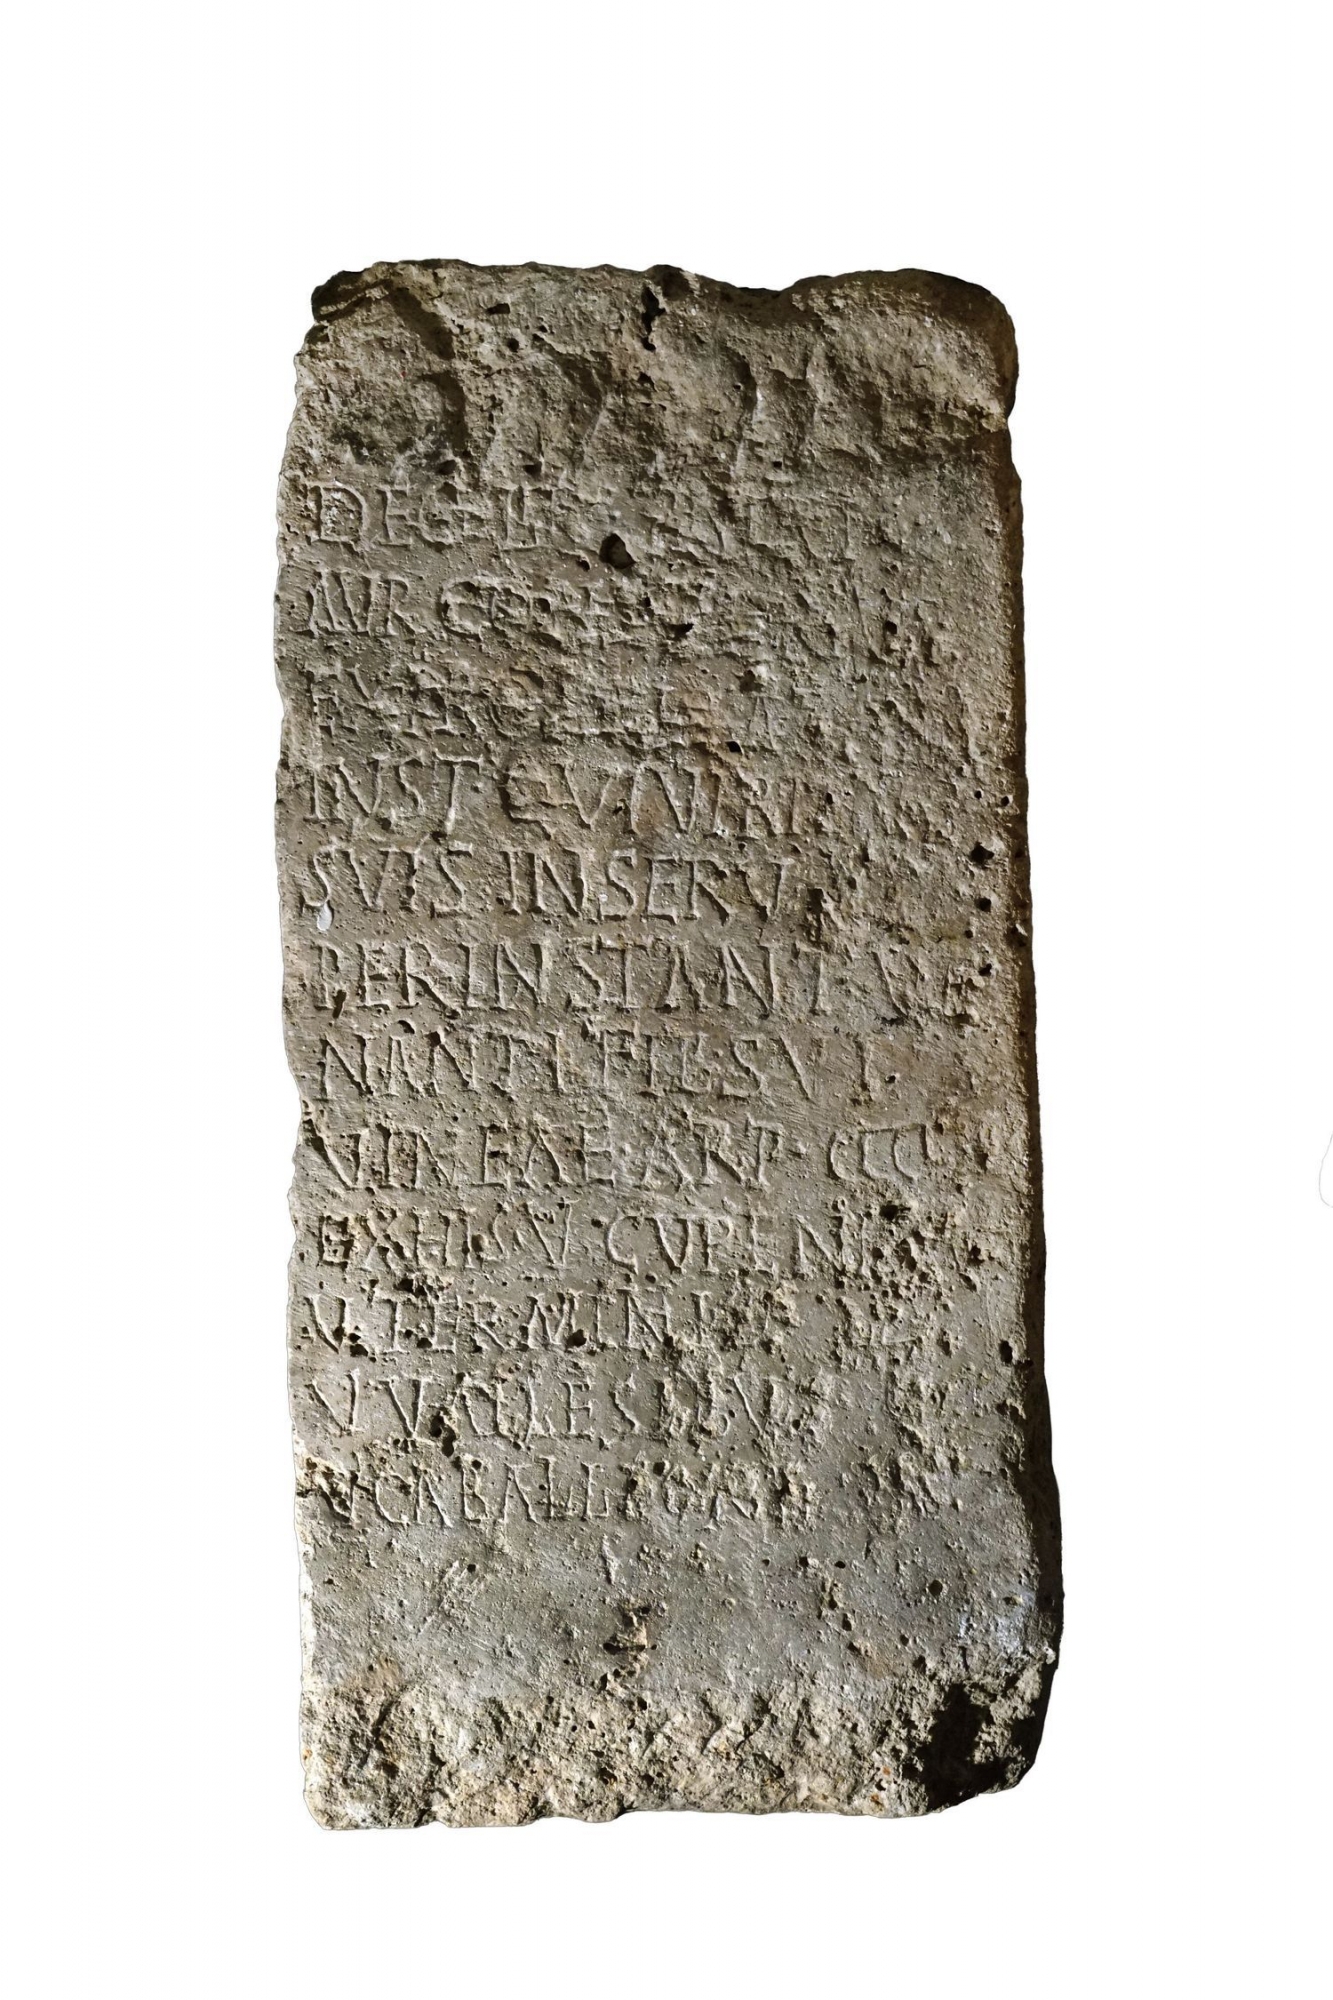 L'inscription mentionnant les cépages valaisans a été retrouvée en Croatie. Elle est datée de vers 280 après J.-C.